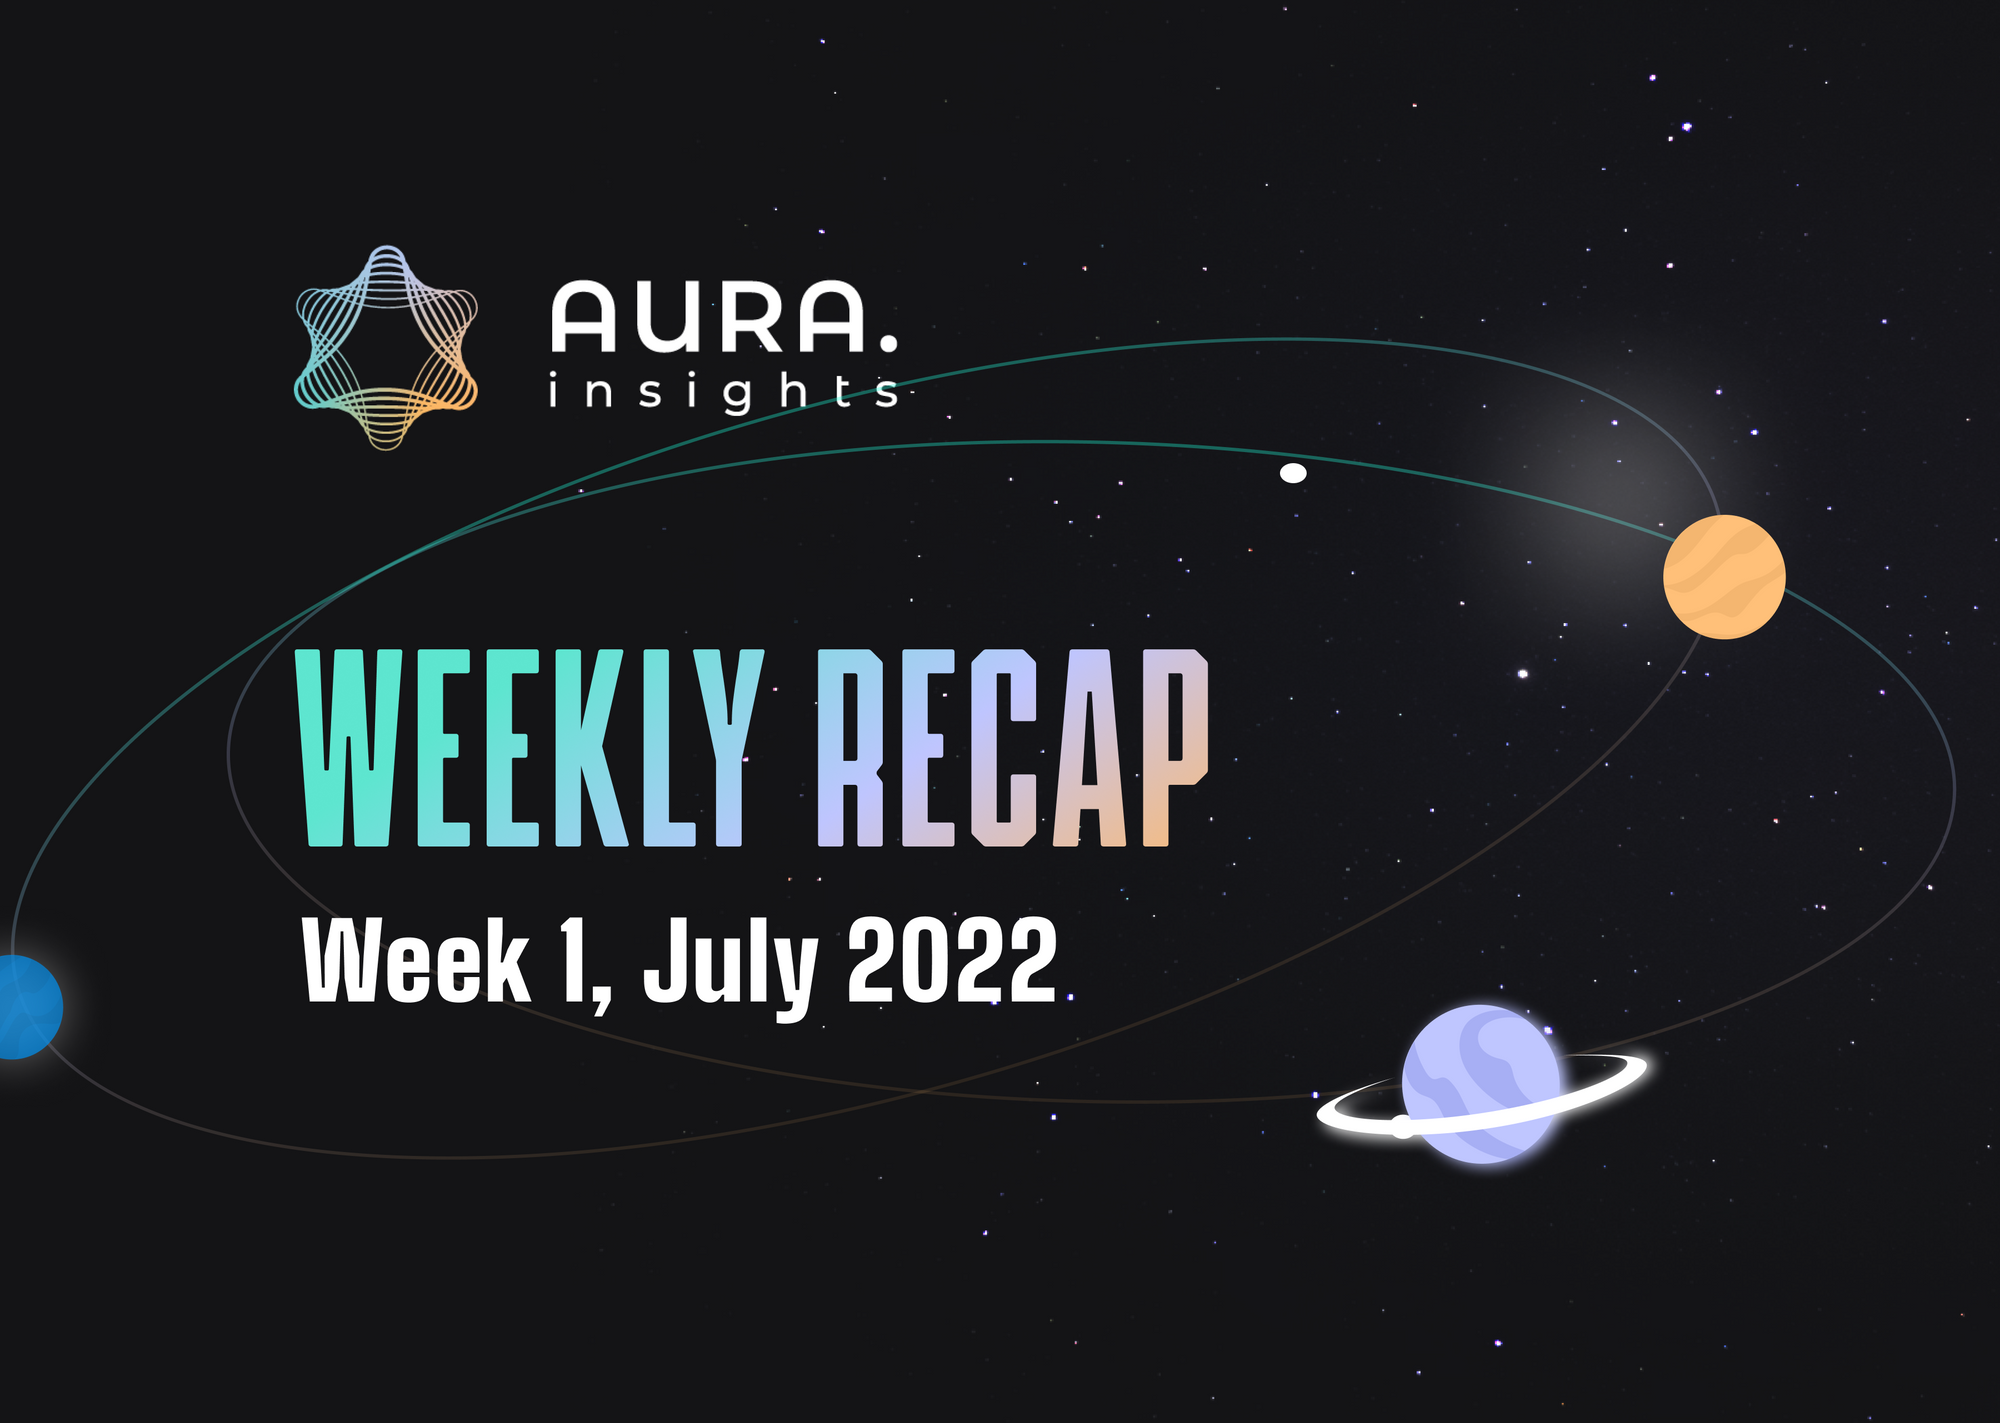 AURA WEEKLY RECAP #1 - WEEK 1, JULY